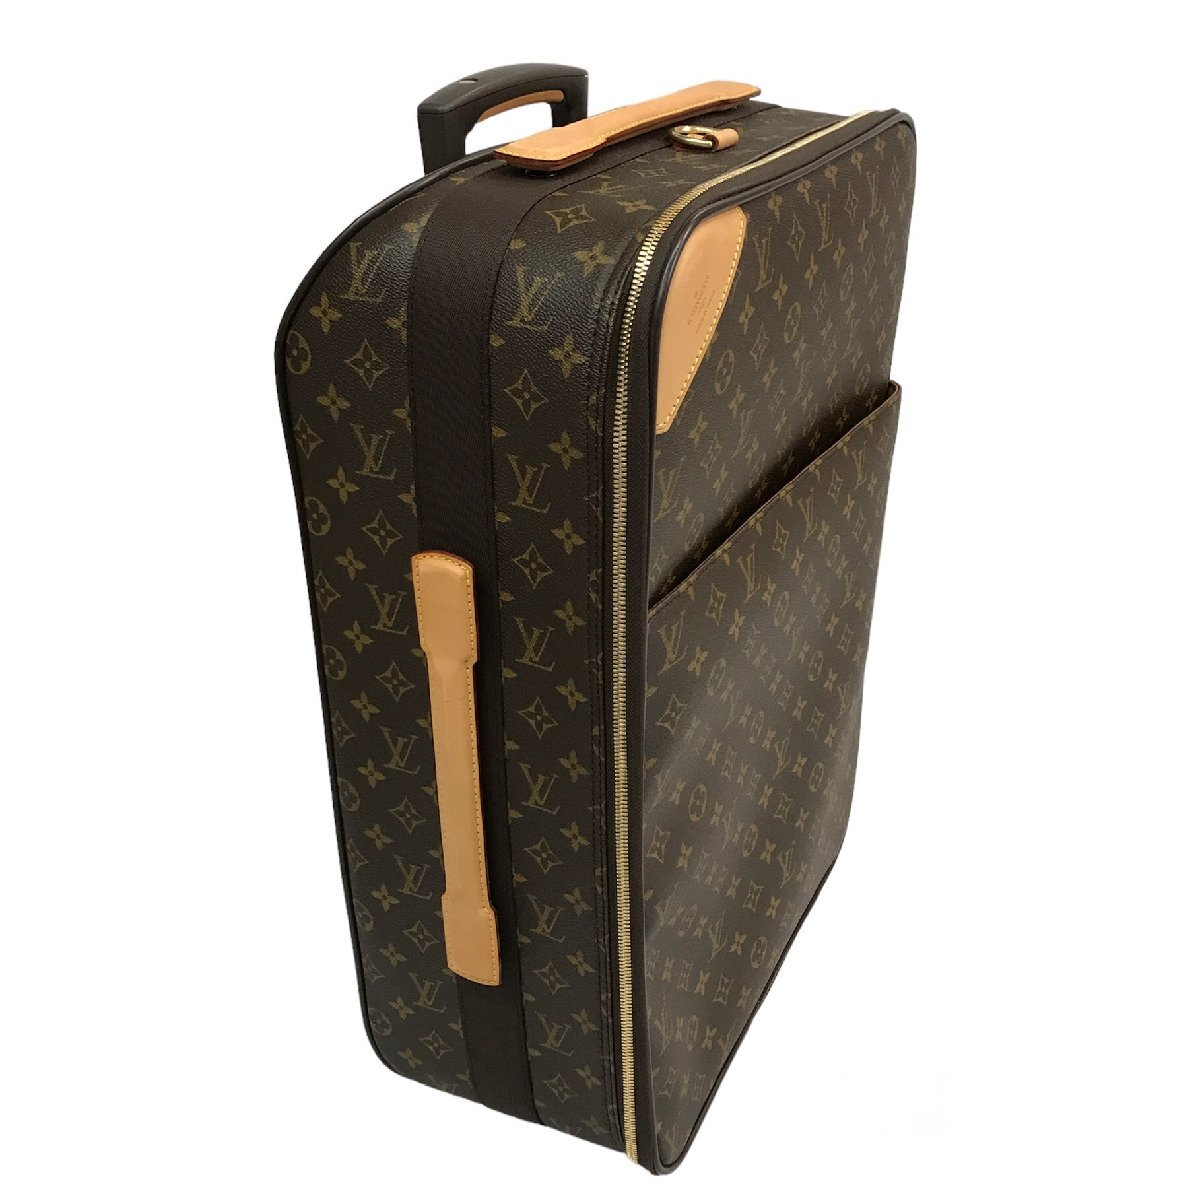 LOUIS VUITON ルイヴィトン モノグラム ペガス50 キャリーケース スーツケース 旅行鞄 ガーメントケース付き 美品 k711_画像3